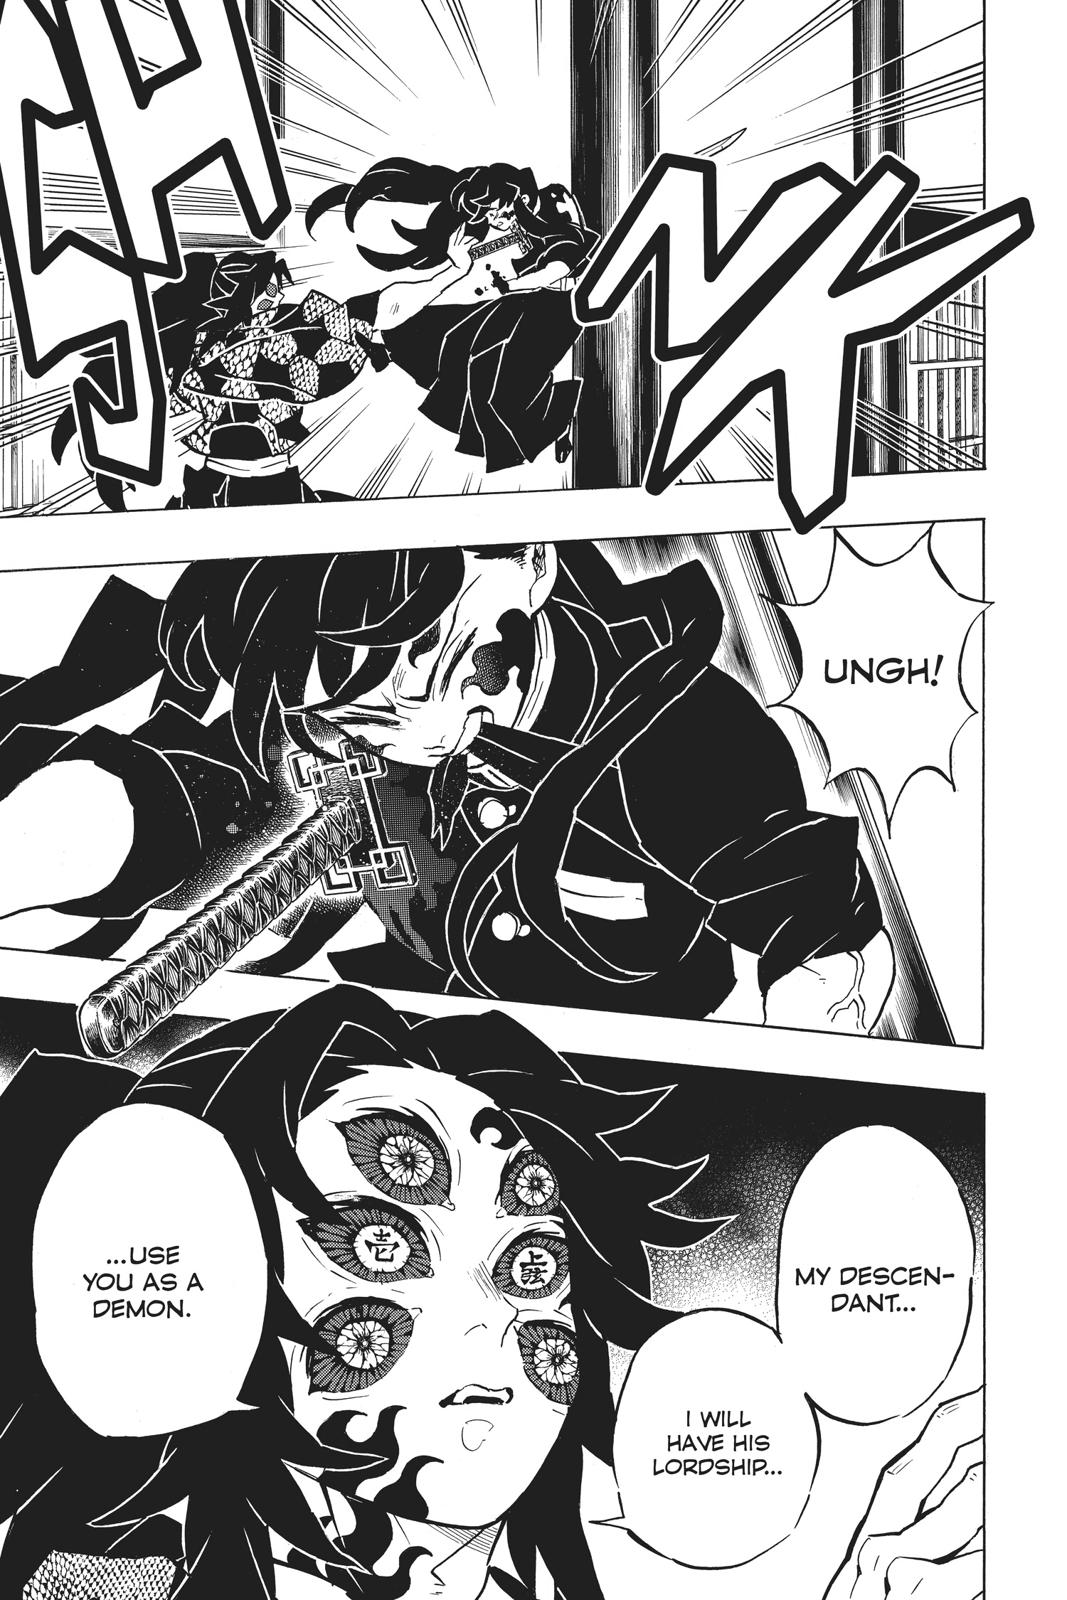 Demon Slayer Manga Manga Chapter - 165 - image 11